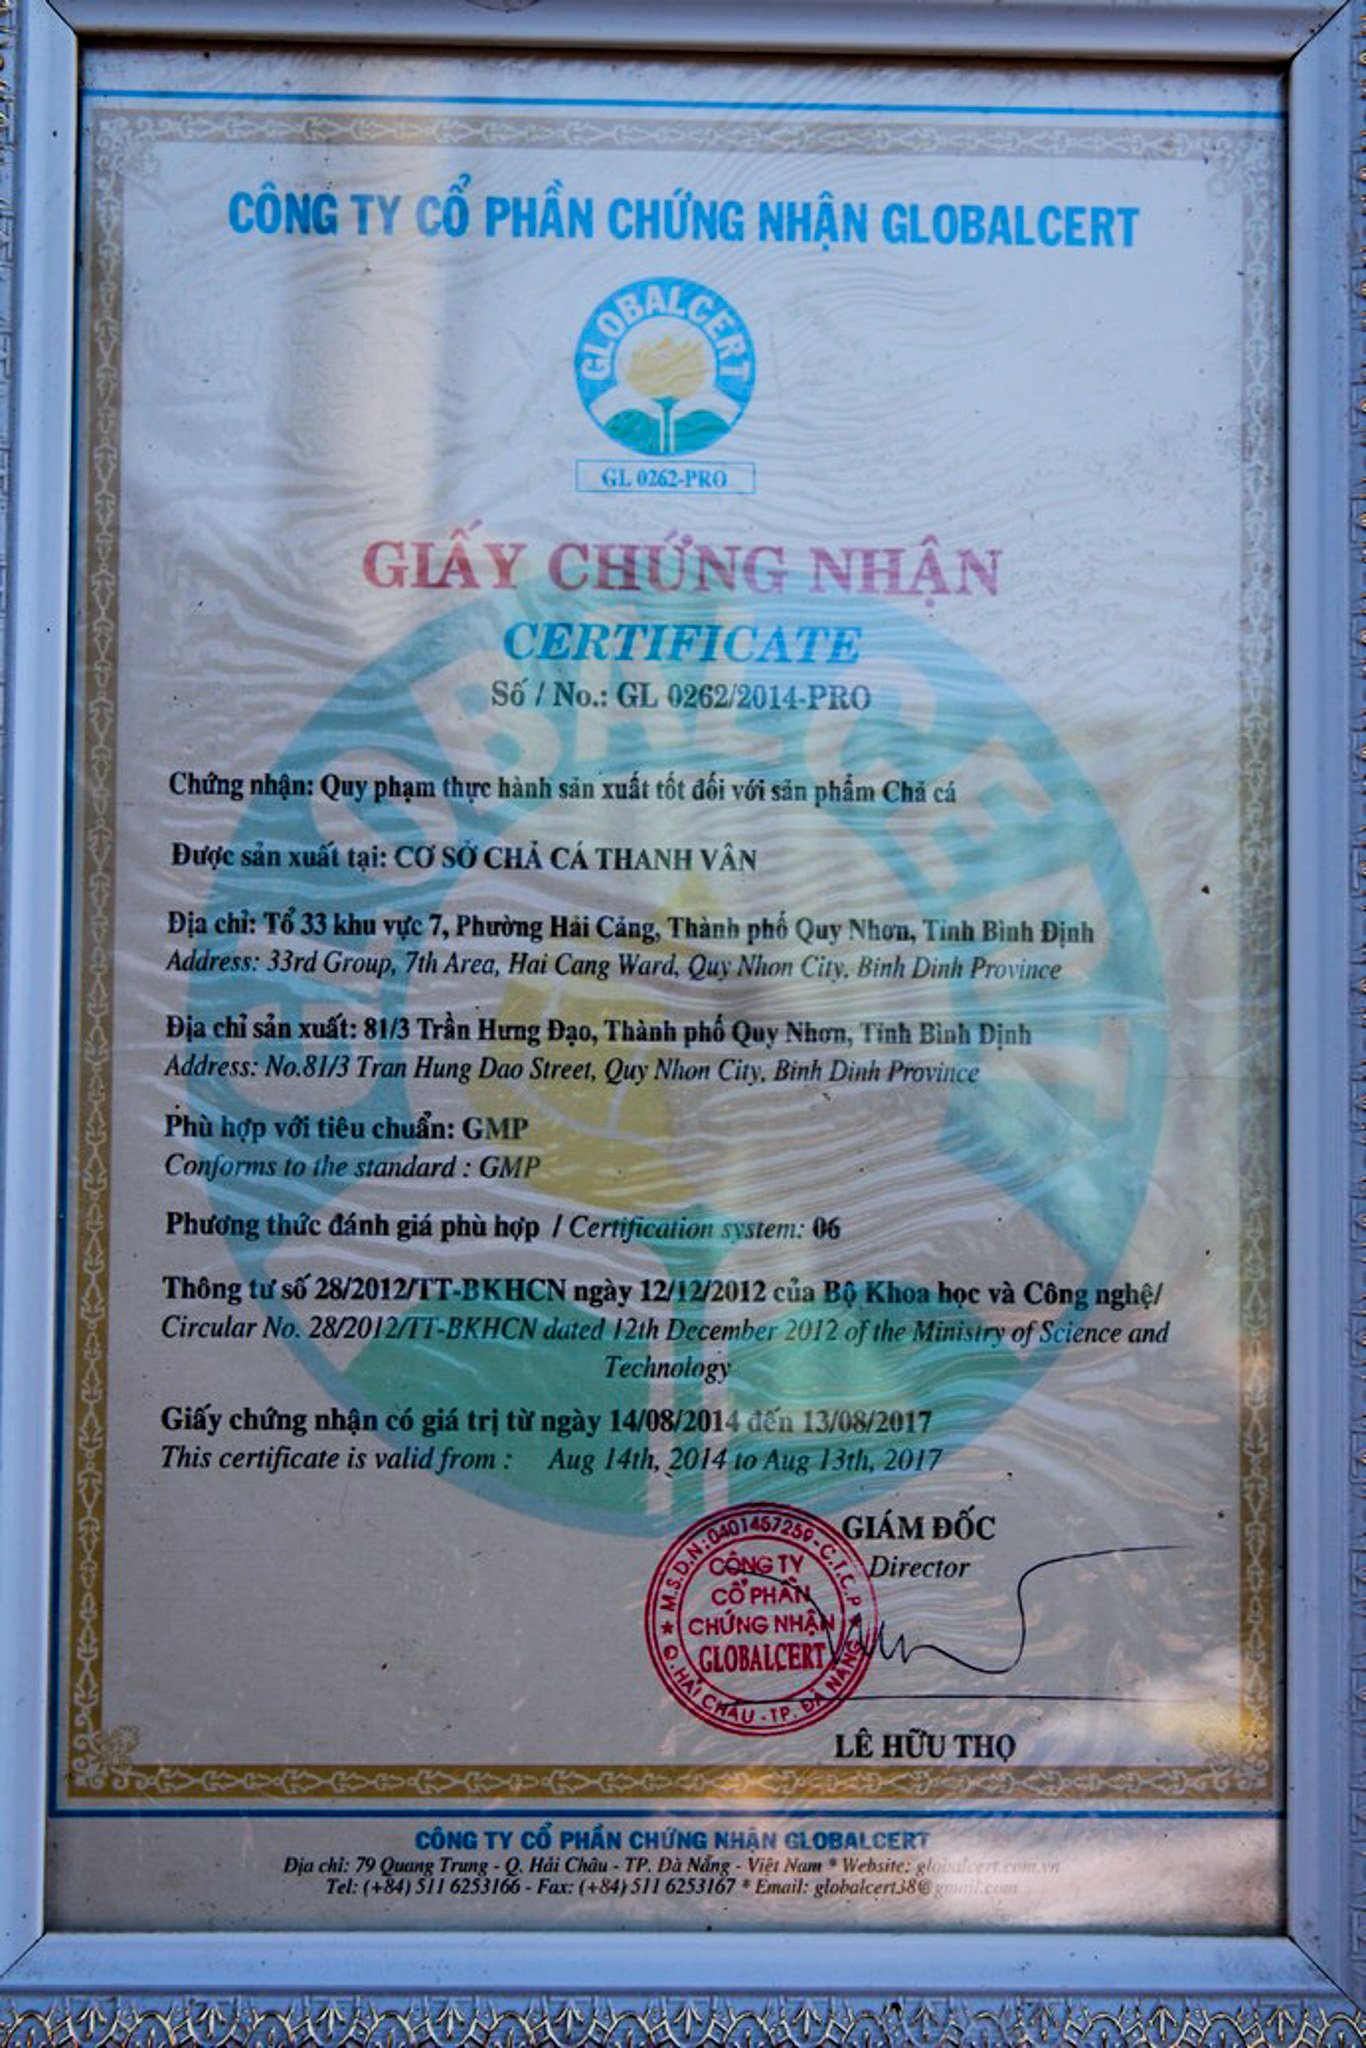 Thanh Vân là một trong những cơ sở sản xuất chả cá nổi tiếng lâu đời tại Quy Nhơn - Ảnh: Hiquynhon